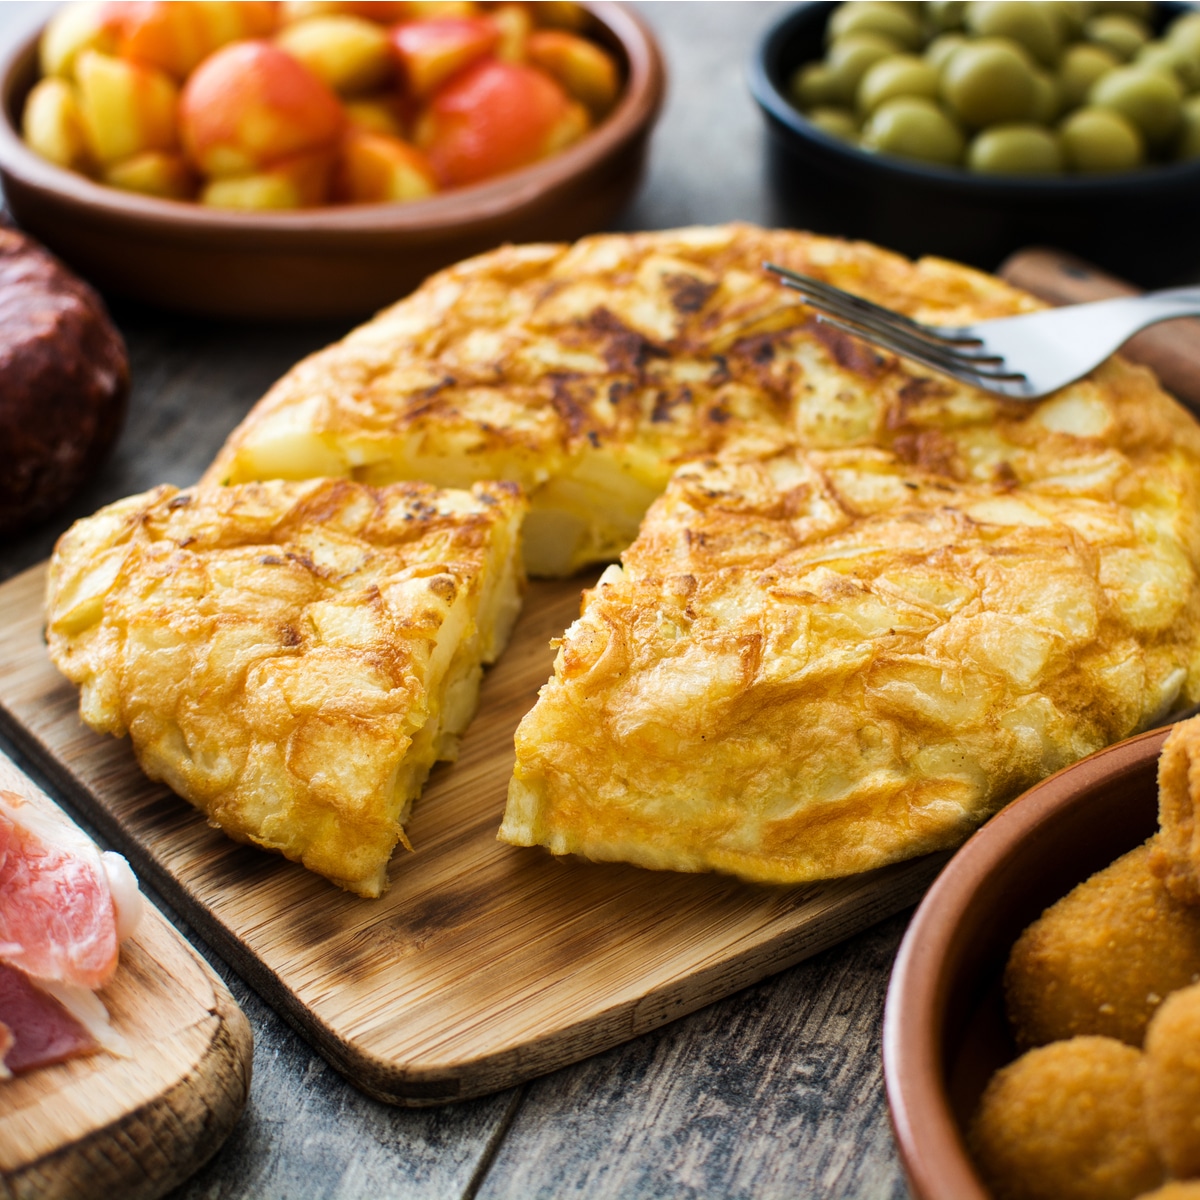 Traditional Spanish tortilla (potato omelette) recipe